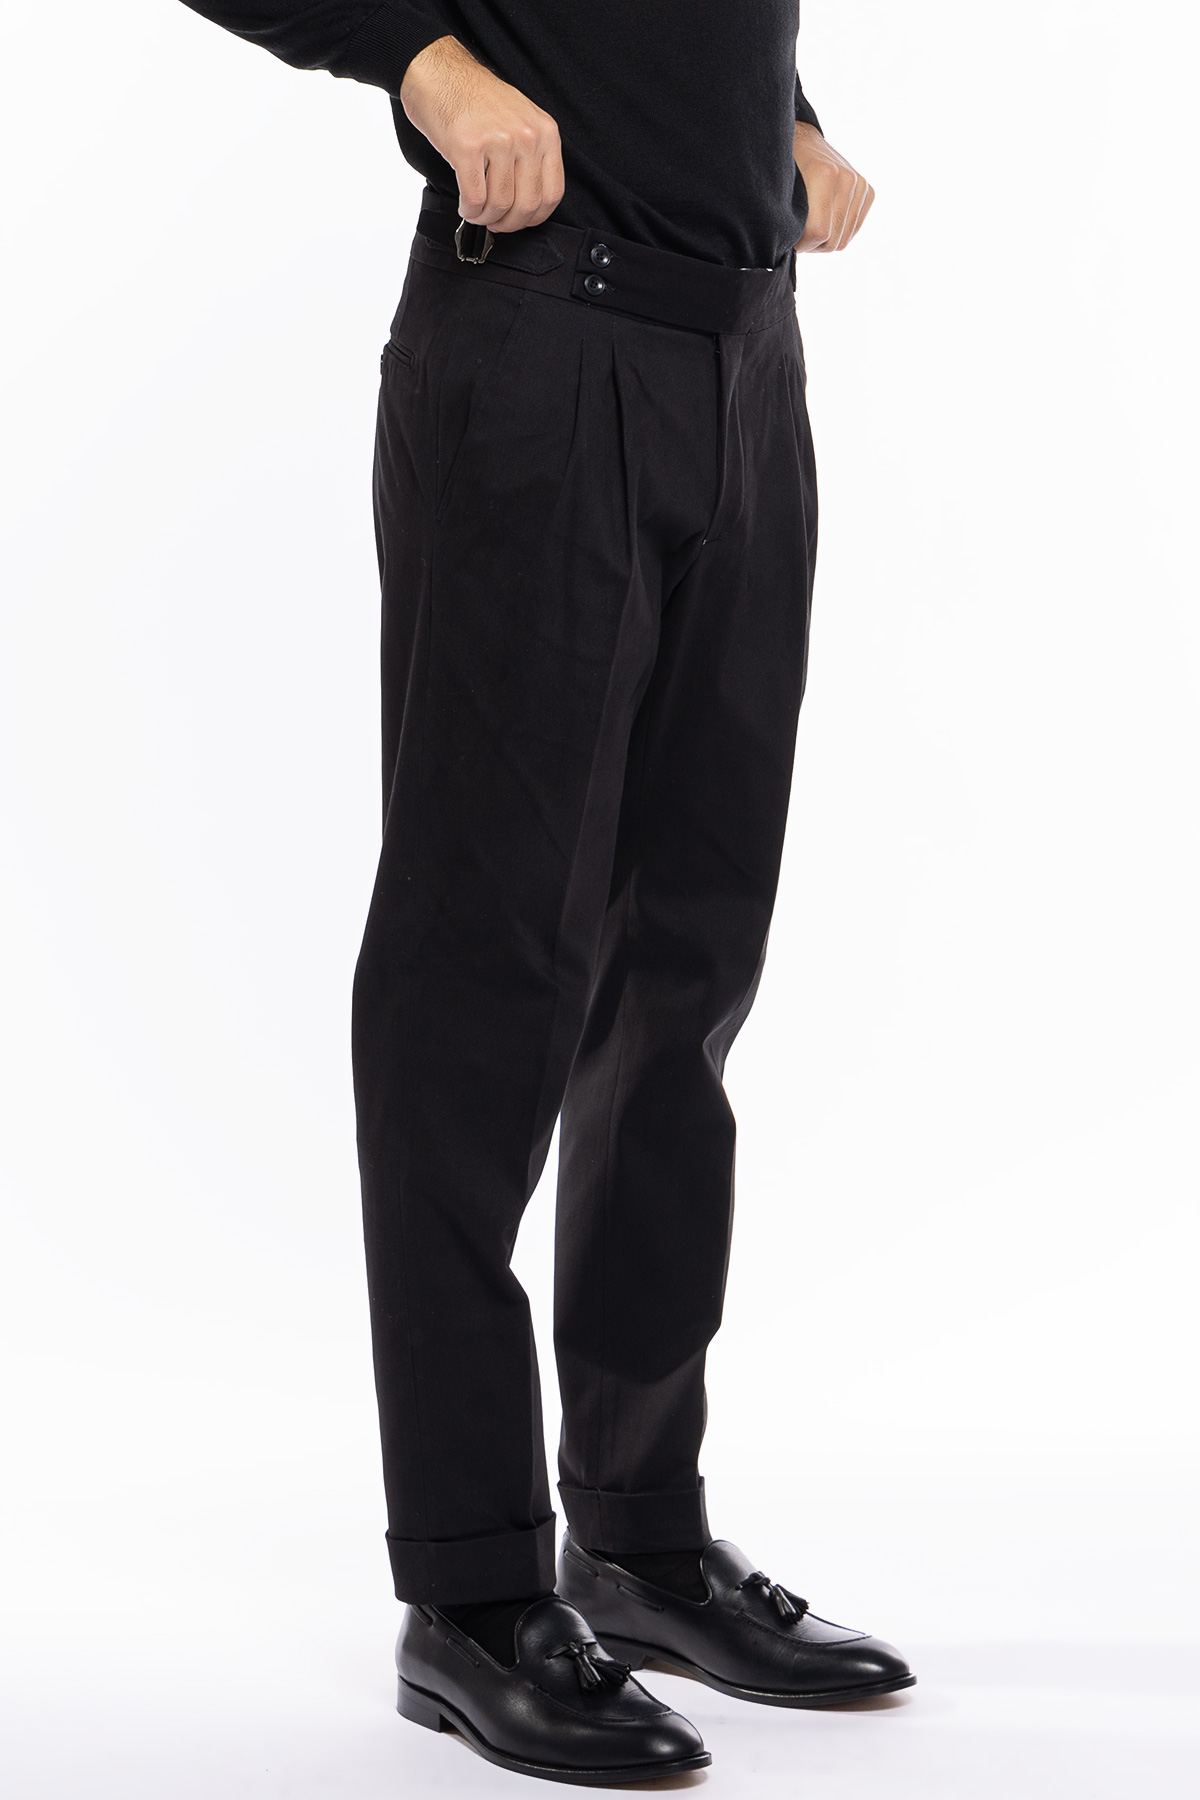 Pantalone uomo nero vita alta tasca america in cotone con doppia pinces e fibbie laterali